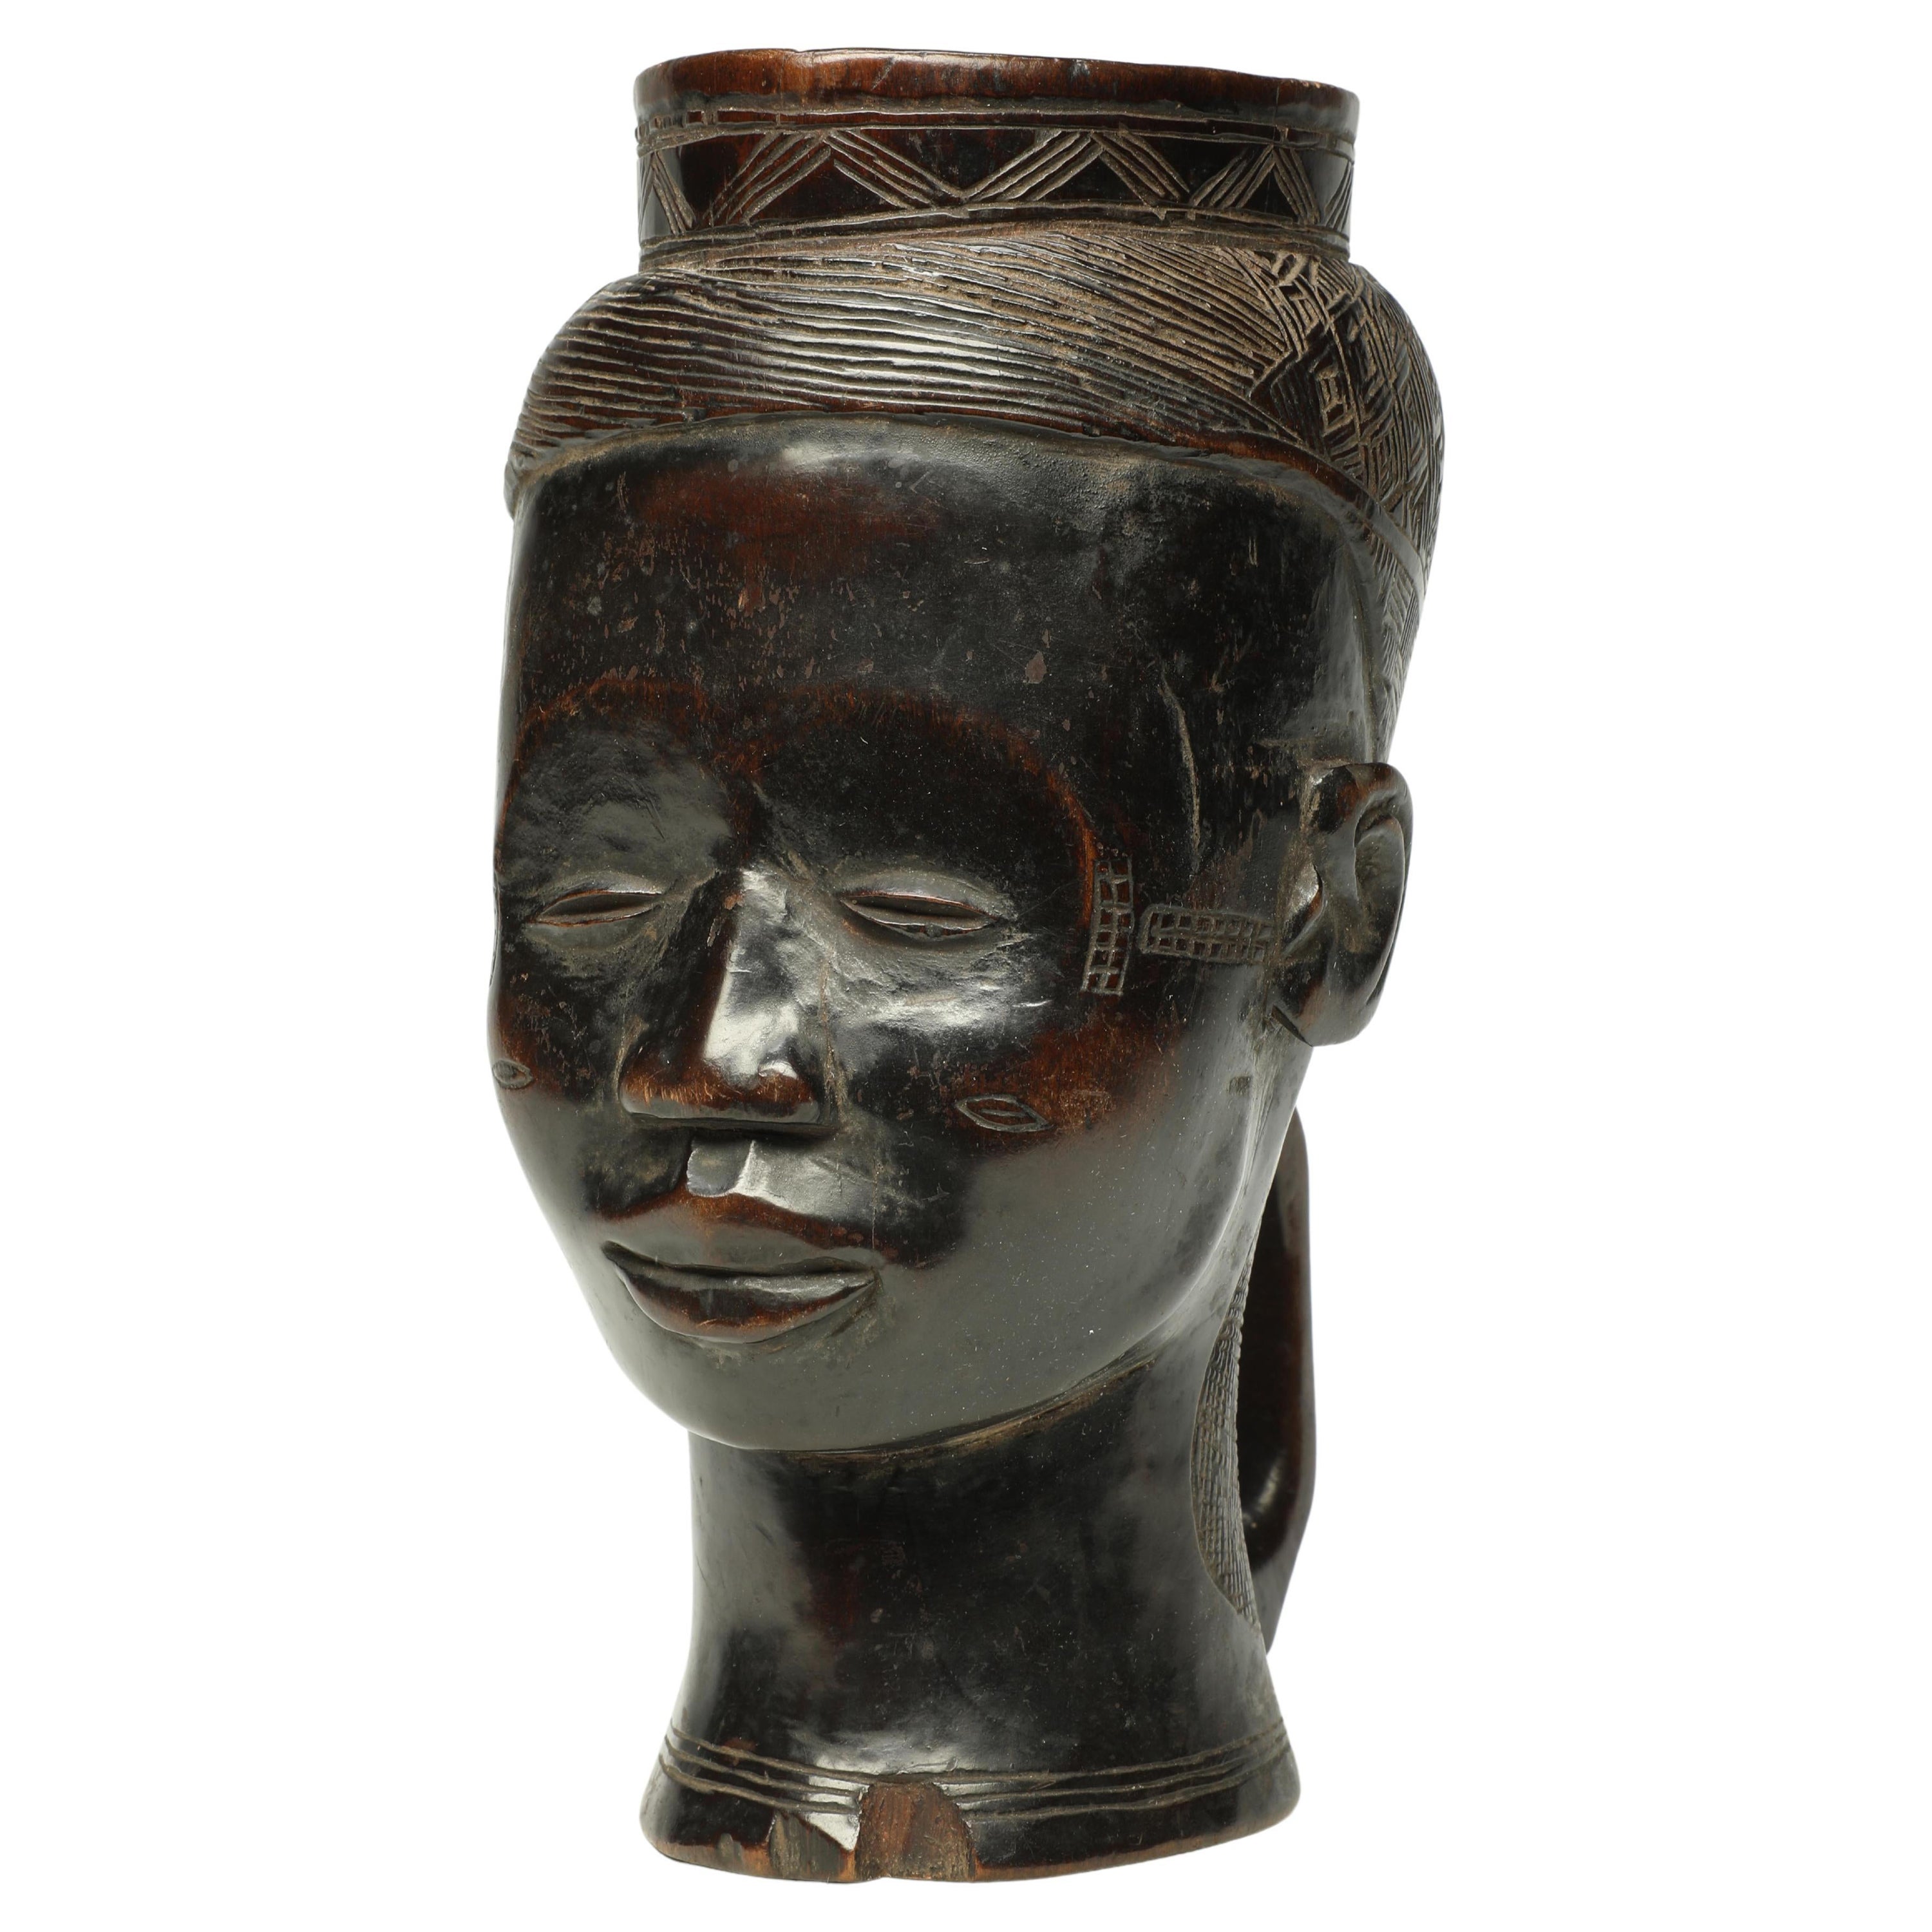 Sehr früh gebrauchte geschnitzte Holz Kuba Figurentasse, Kongo, Afrika Süßes Gesicht